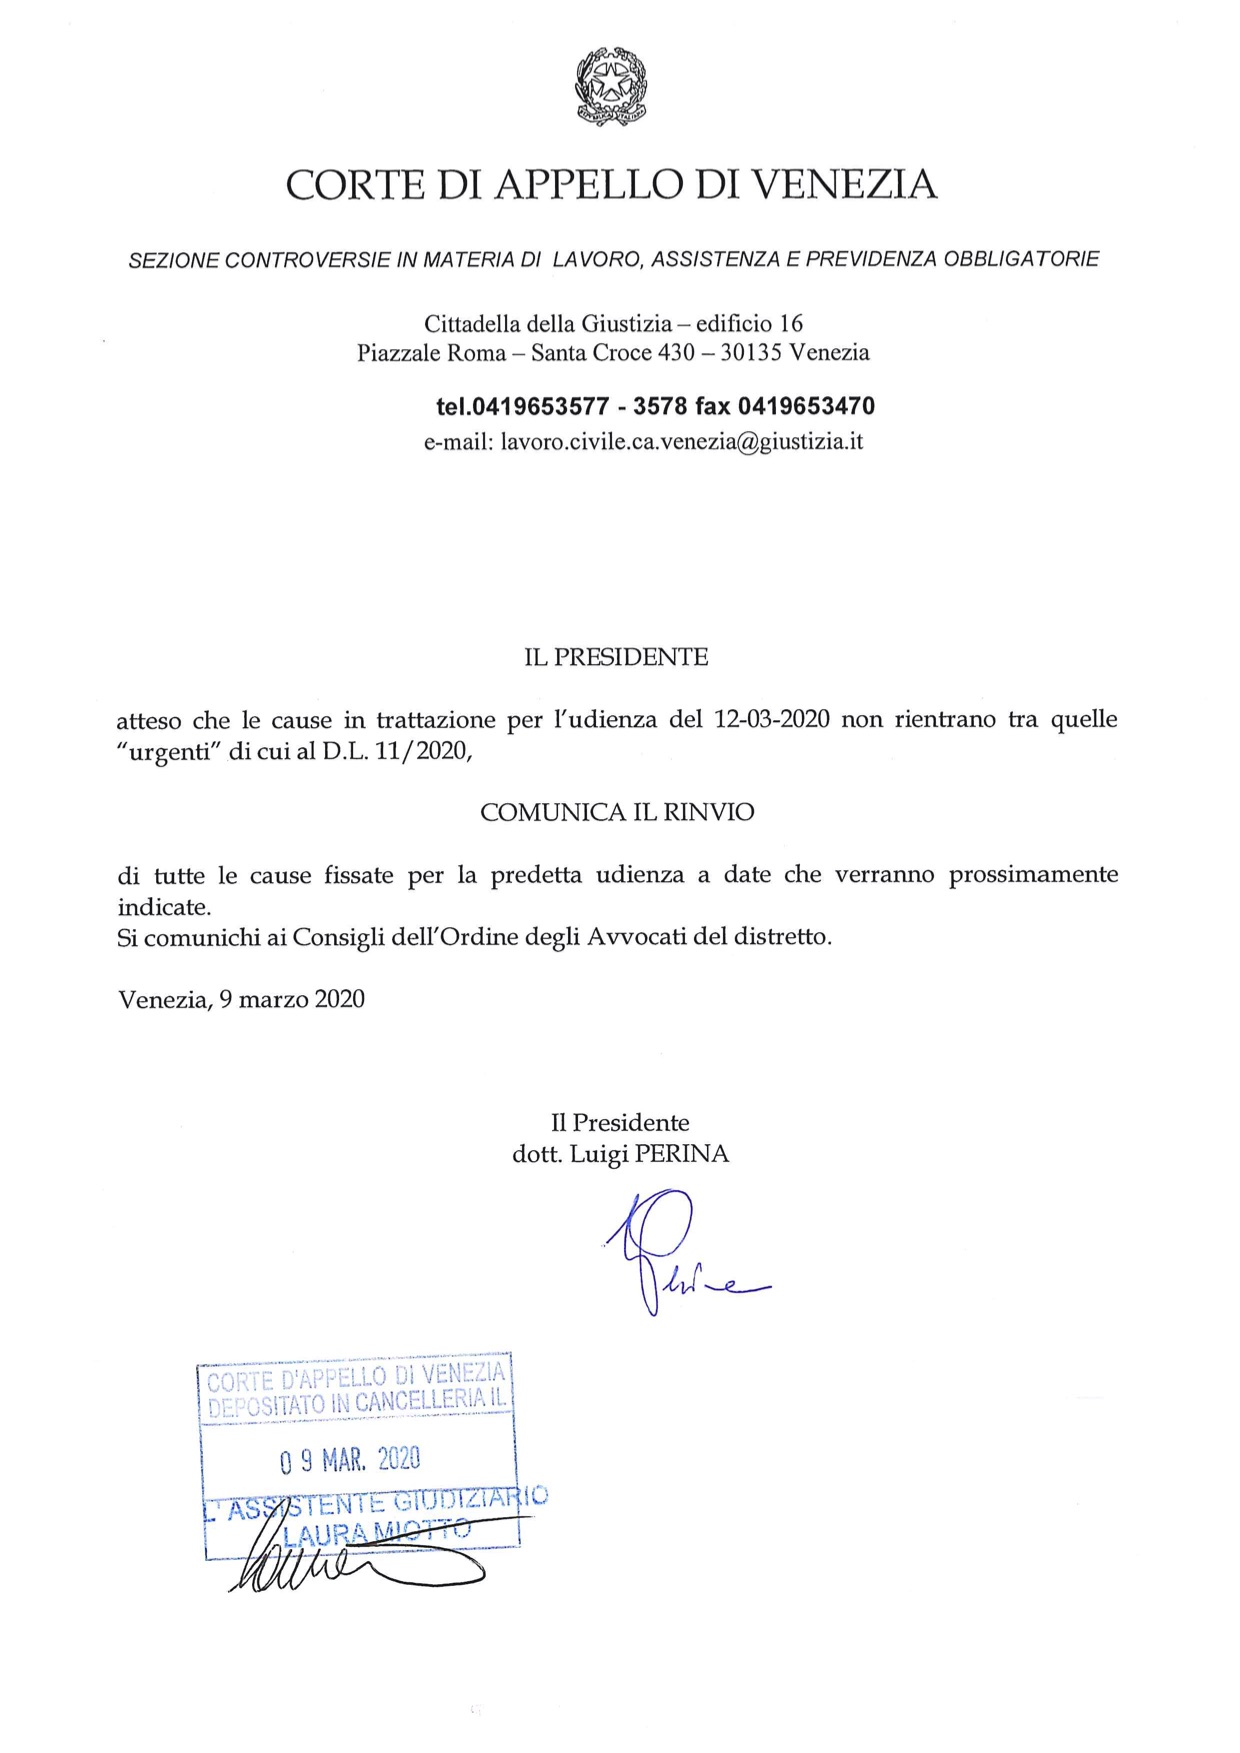 Comunicazione Presidente Sezione Lavoro Corte d'Appello di Venezia 9.03.2020